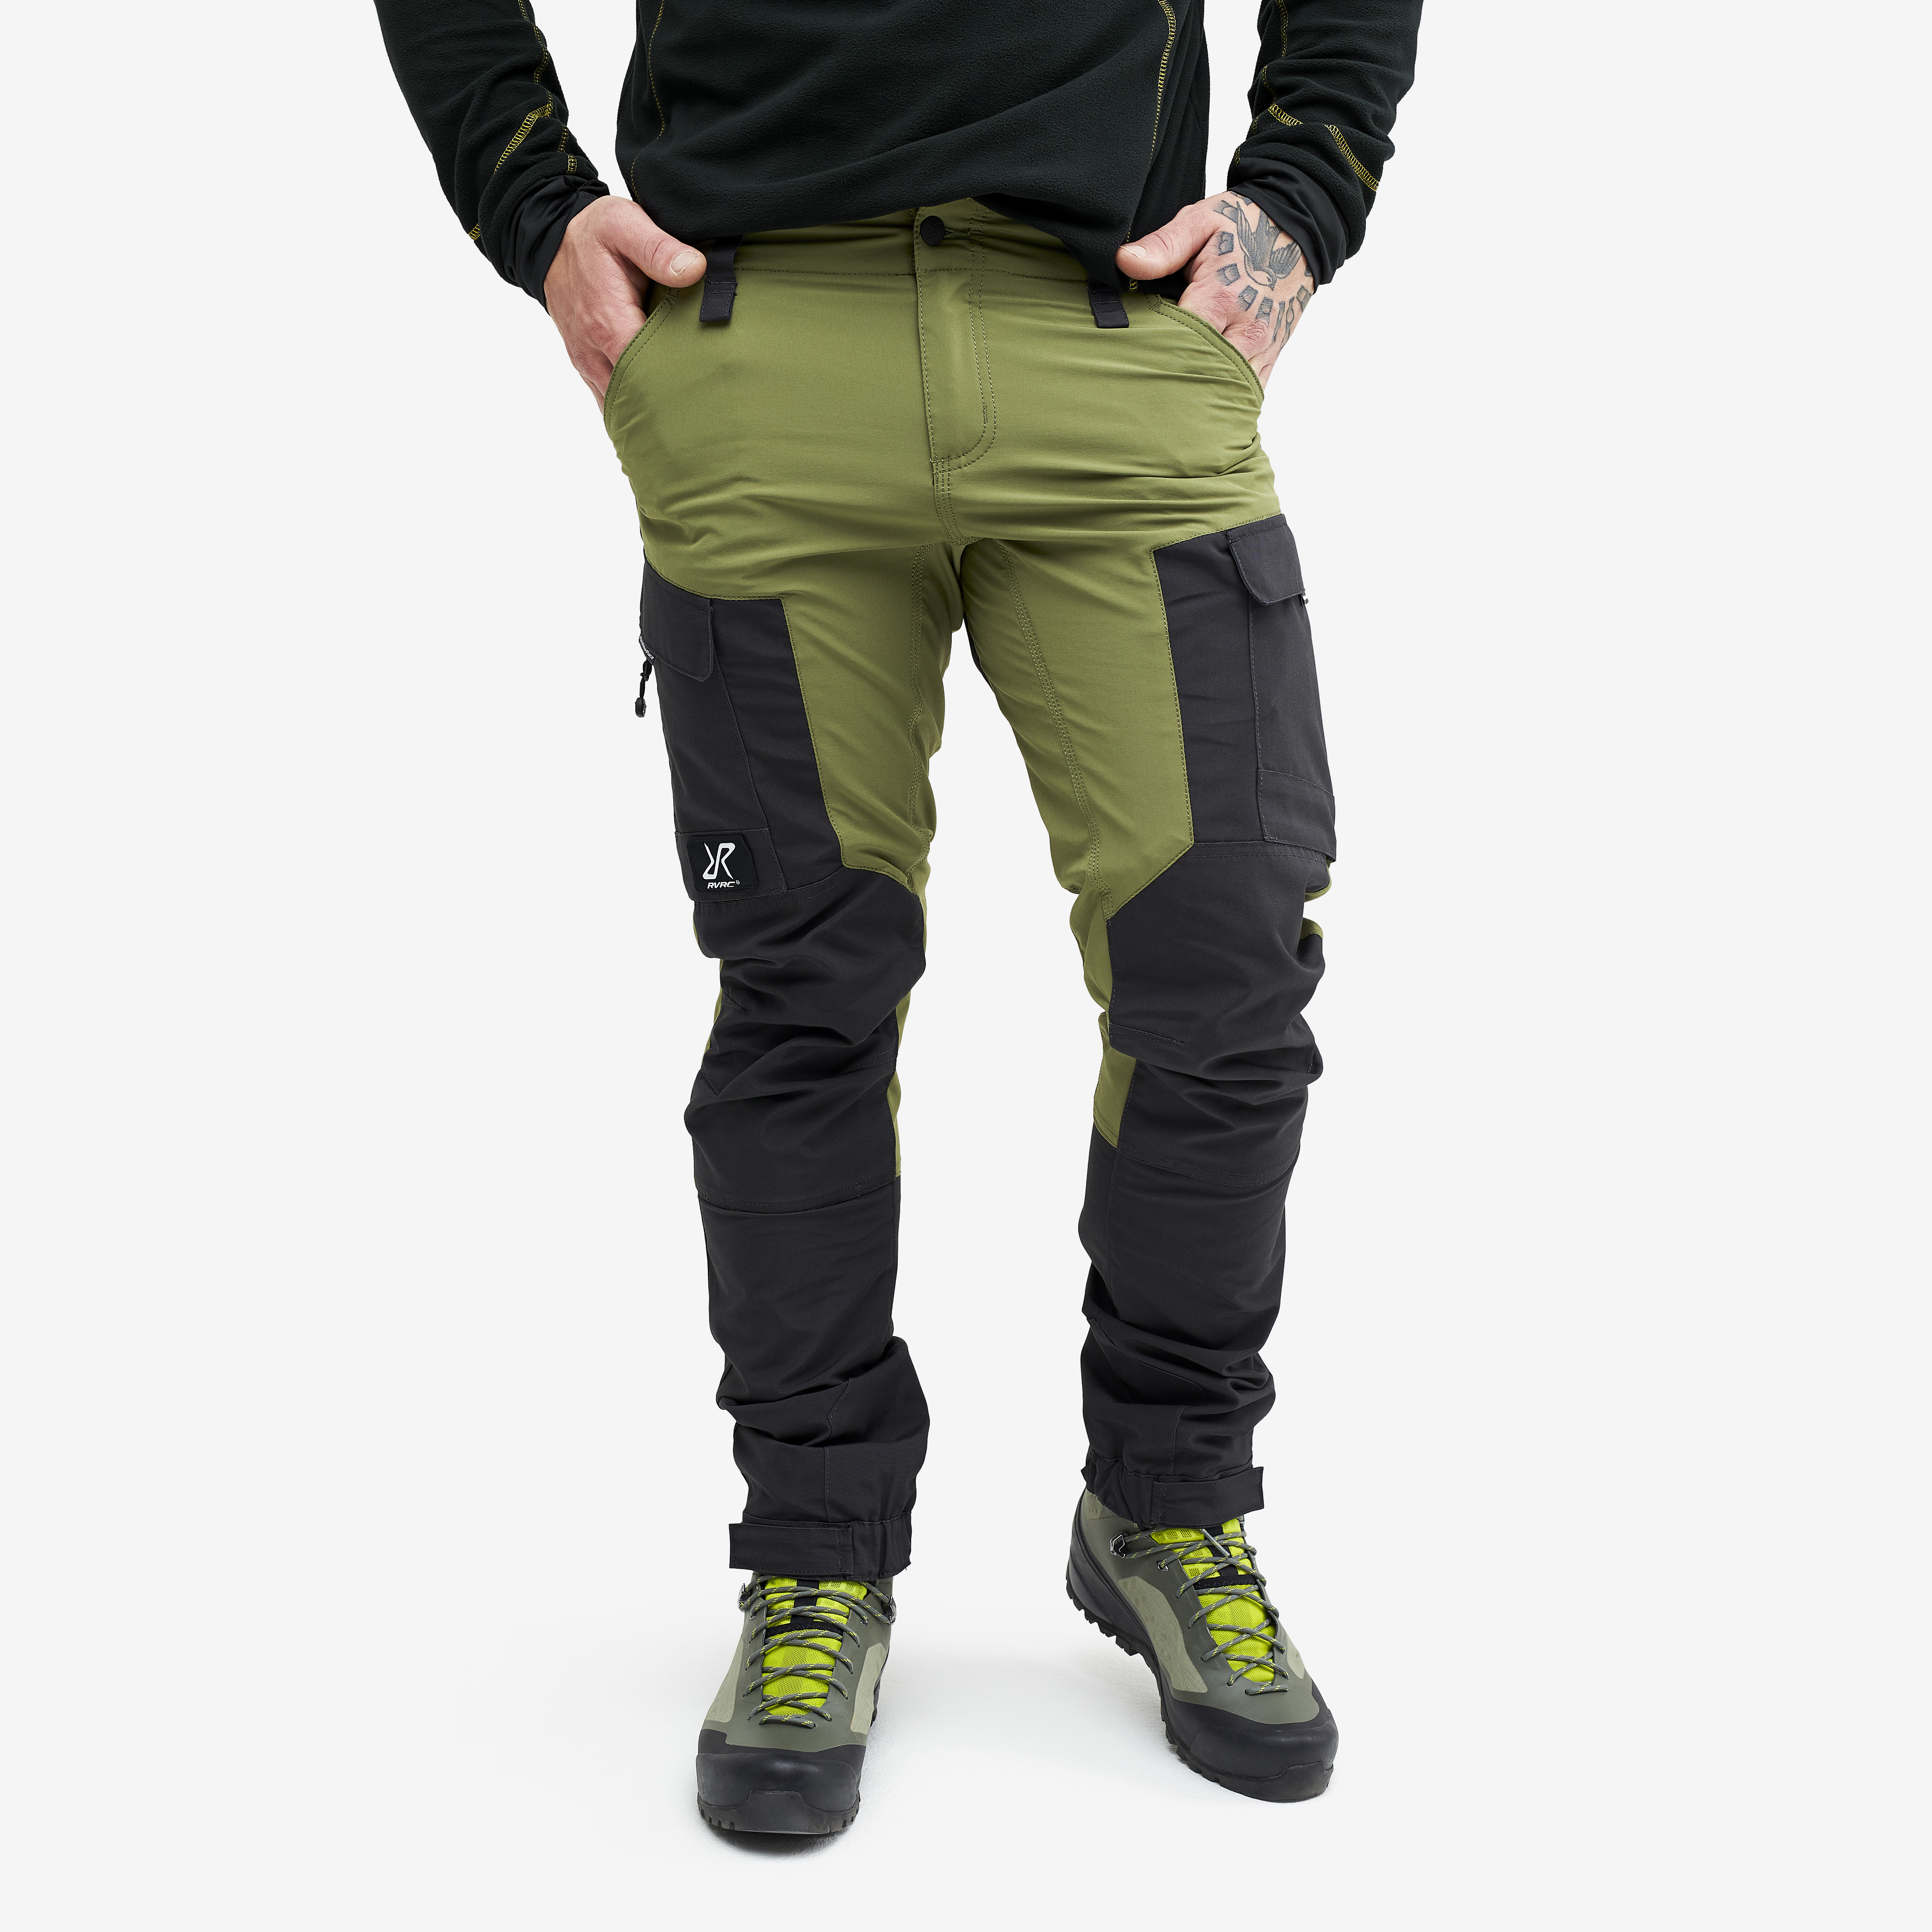 RVRC GP outdoor pants for men in green